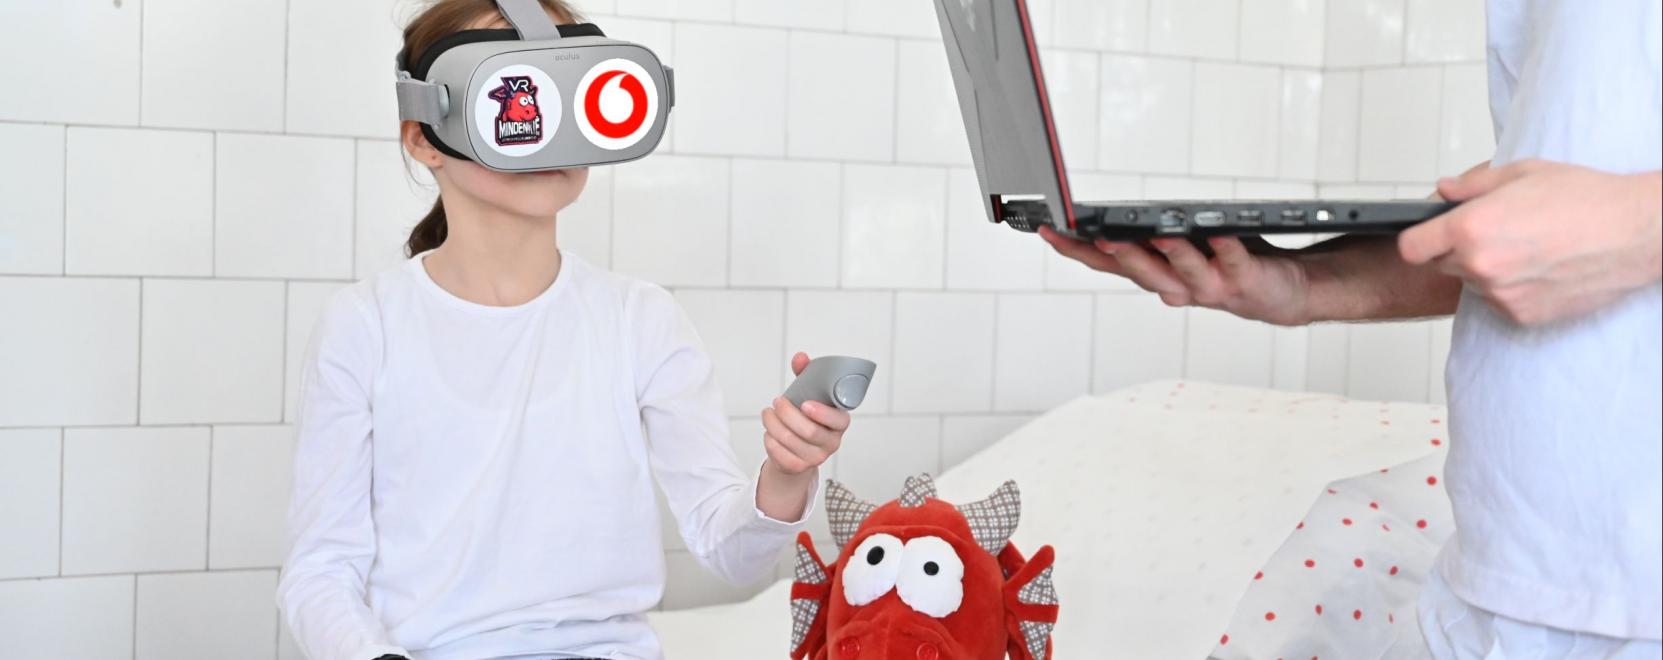 Mostantól a VR is segít a Bethesda Gyermekkórházban